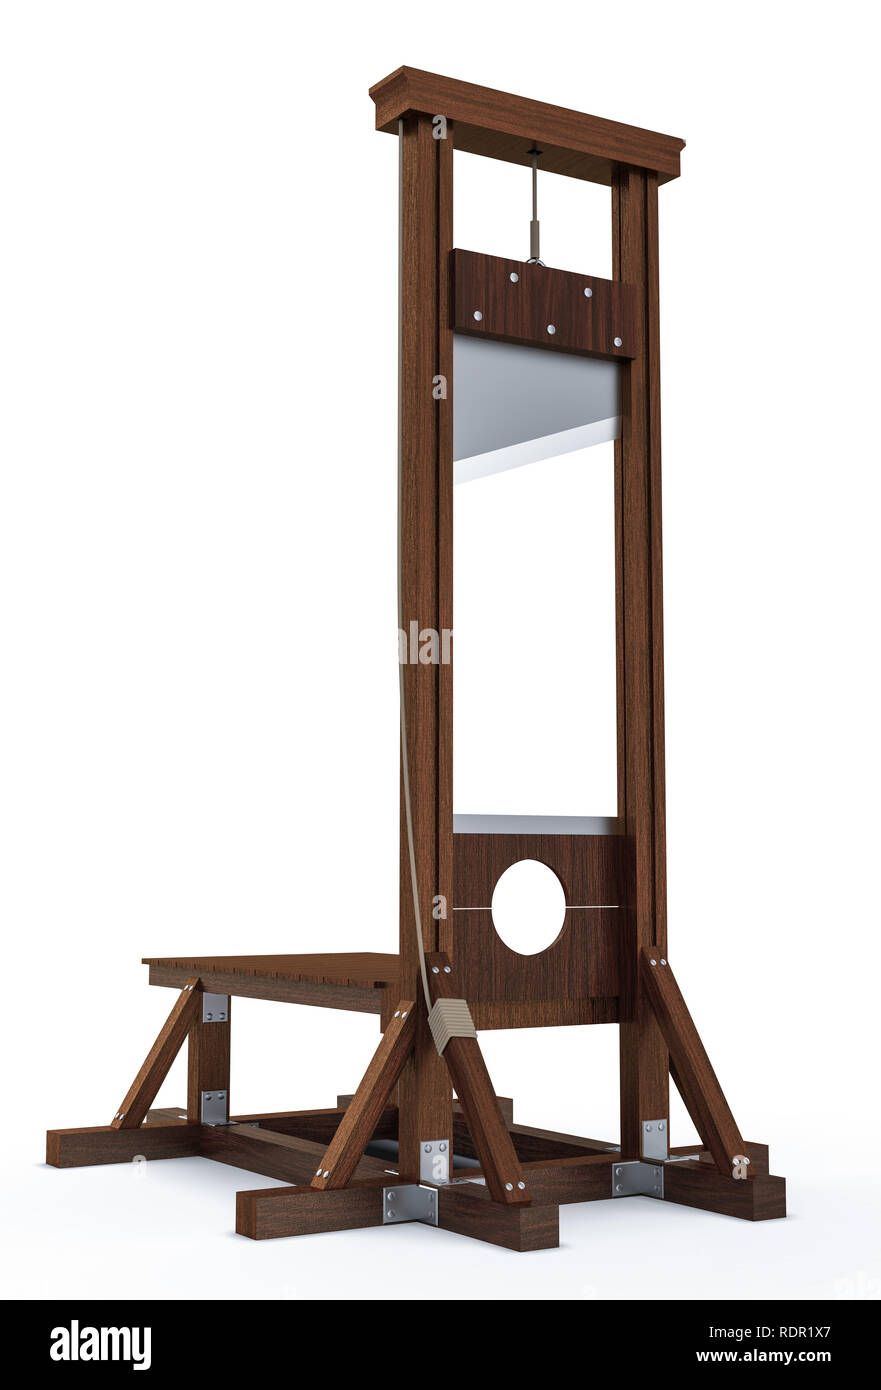 Tableau de la guillotine pour infliger la peine capitale par décapitation isolé sur fond blanc. Instrument en bois pour l'exécution Banque D'Images